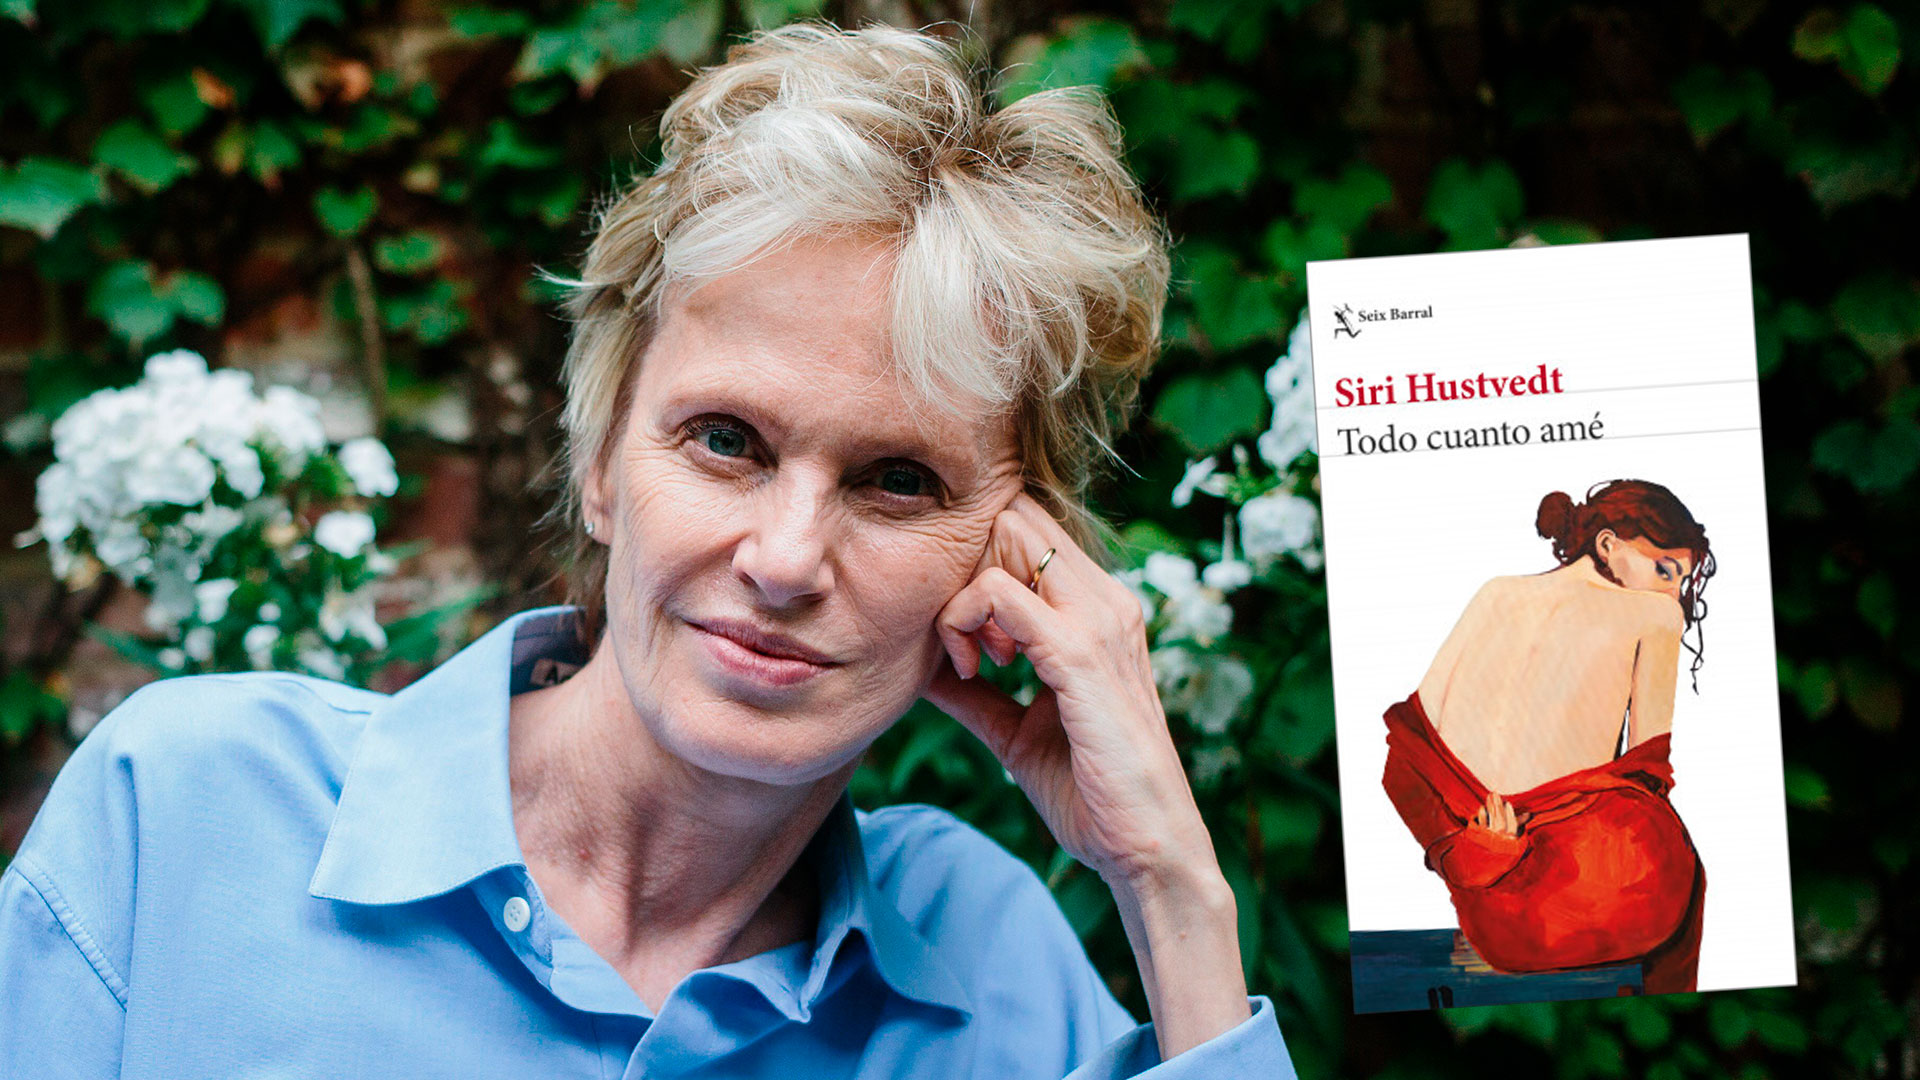 Siri Hustvedt y su libro "Todo cuanto amé".